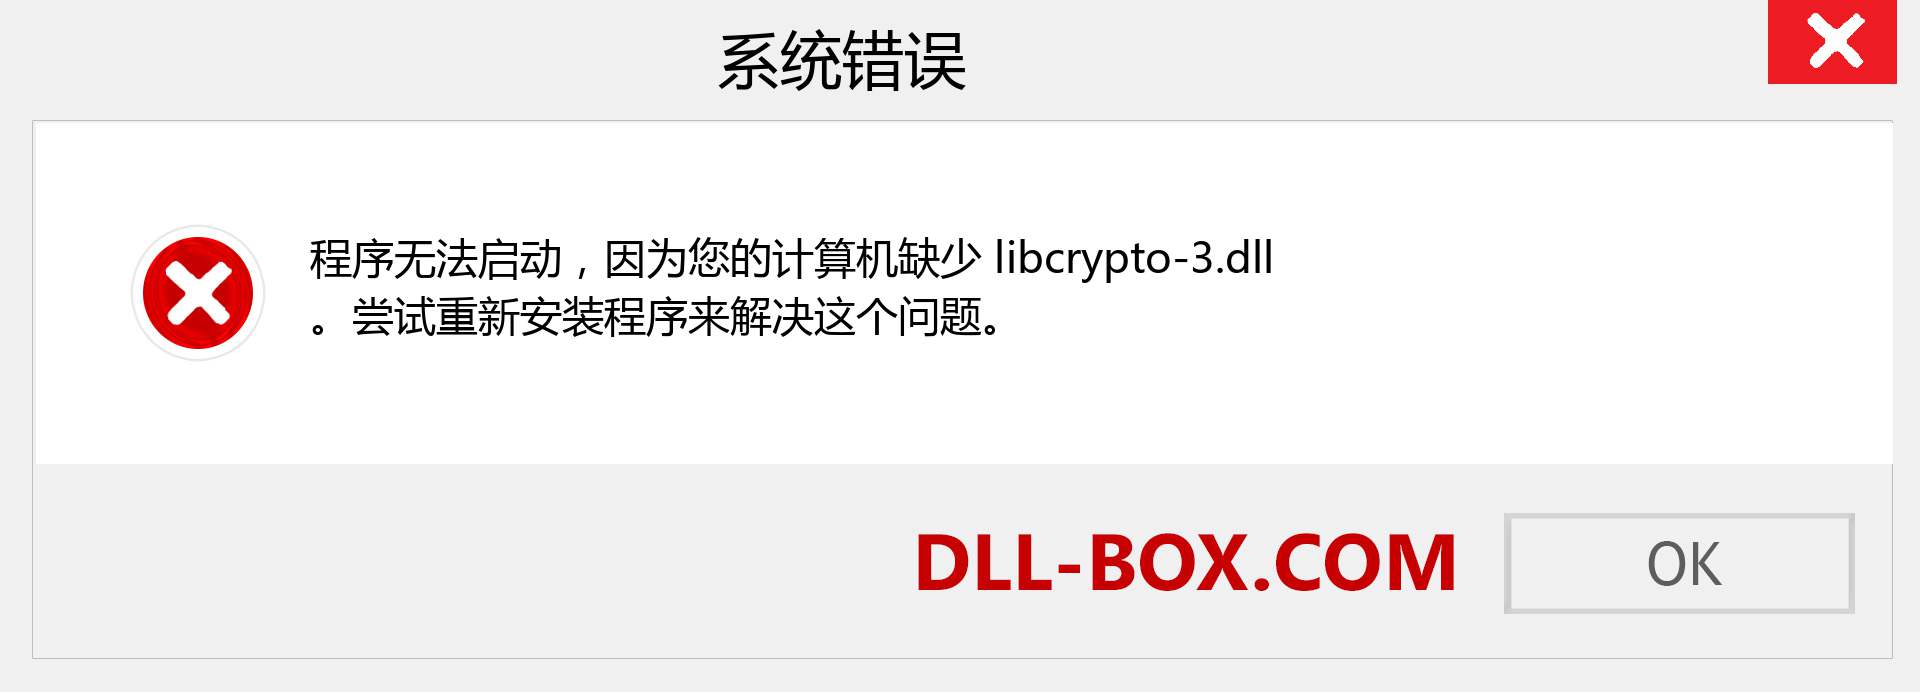 libcrypto-3.dll 文件丢失？。 适用于 Windows 7、8、10 的下载 - 修复 Windows、照片、图像上的 libcrypto-3 dll 丢失错误